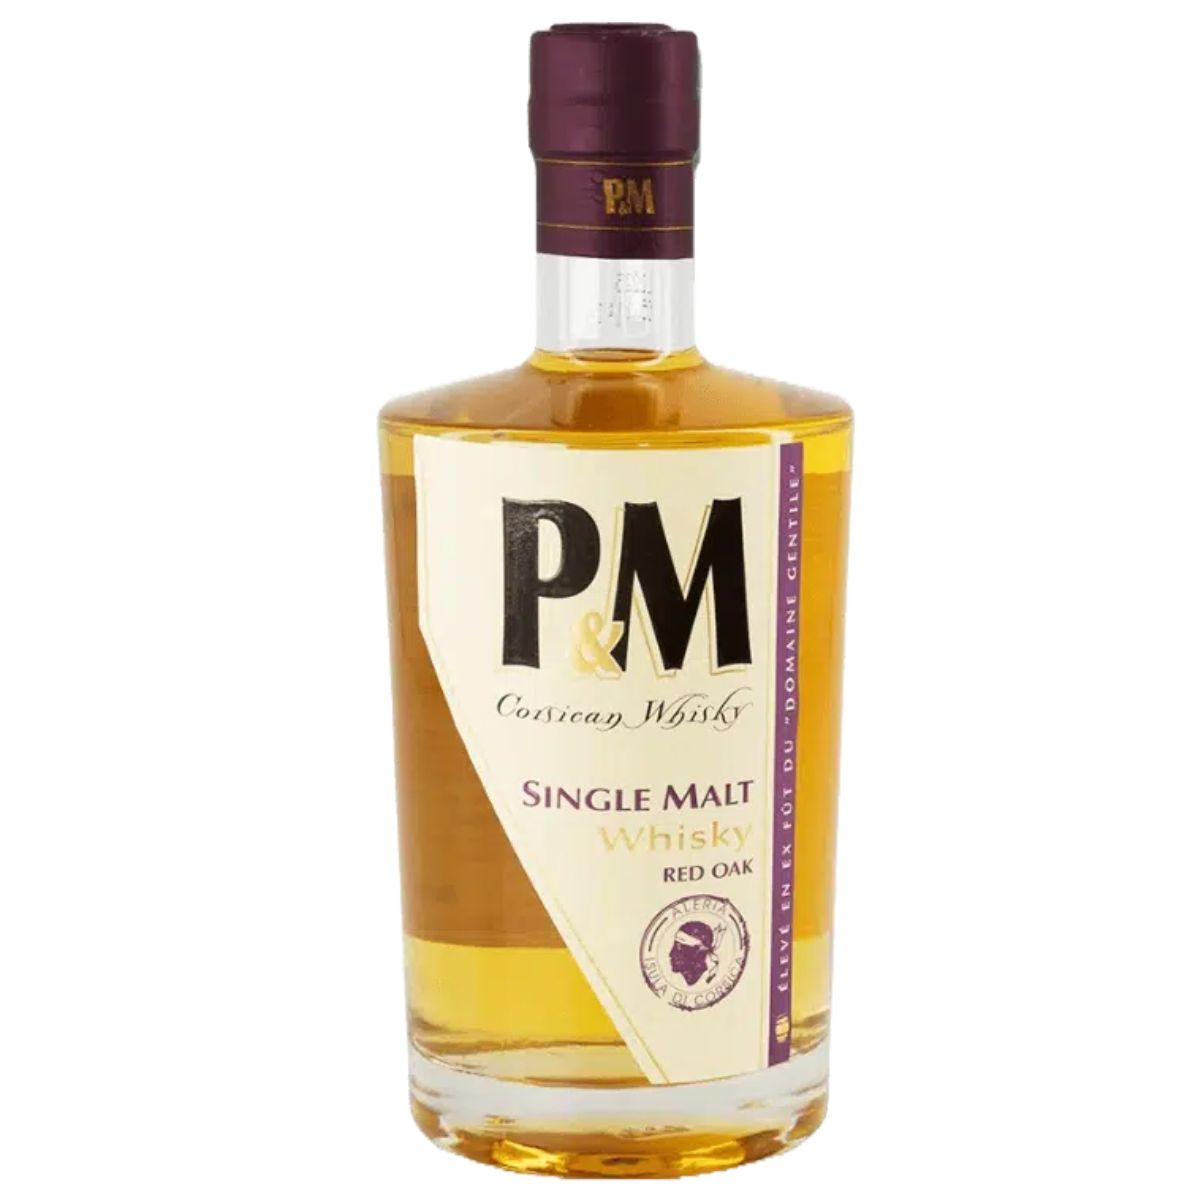 P&M - Single Malt Red Oak